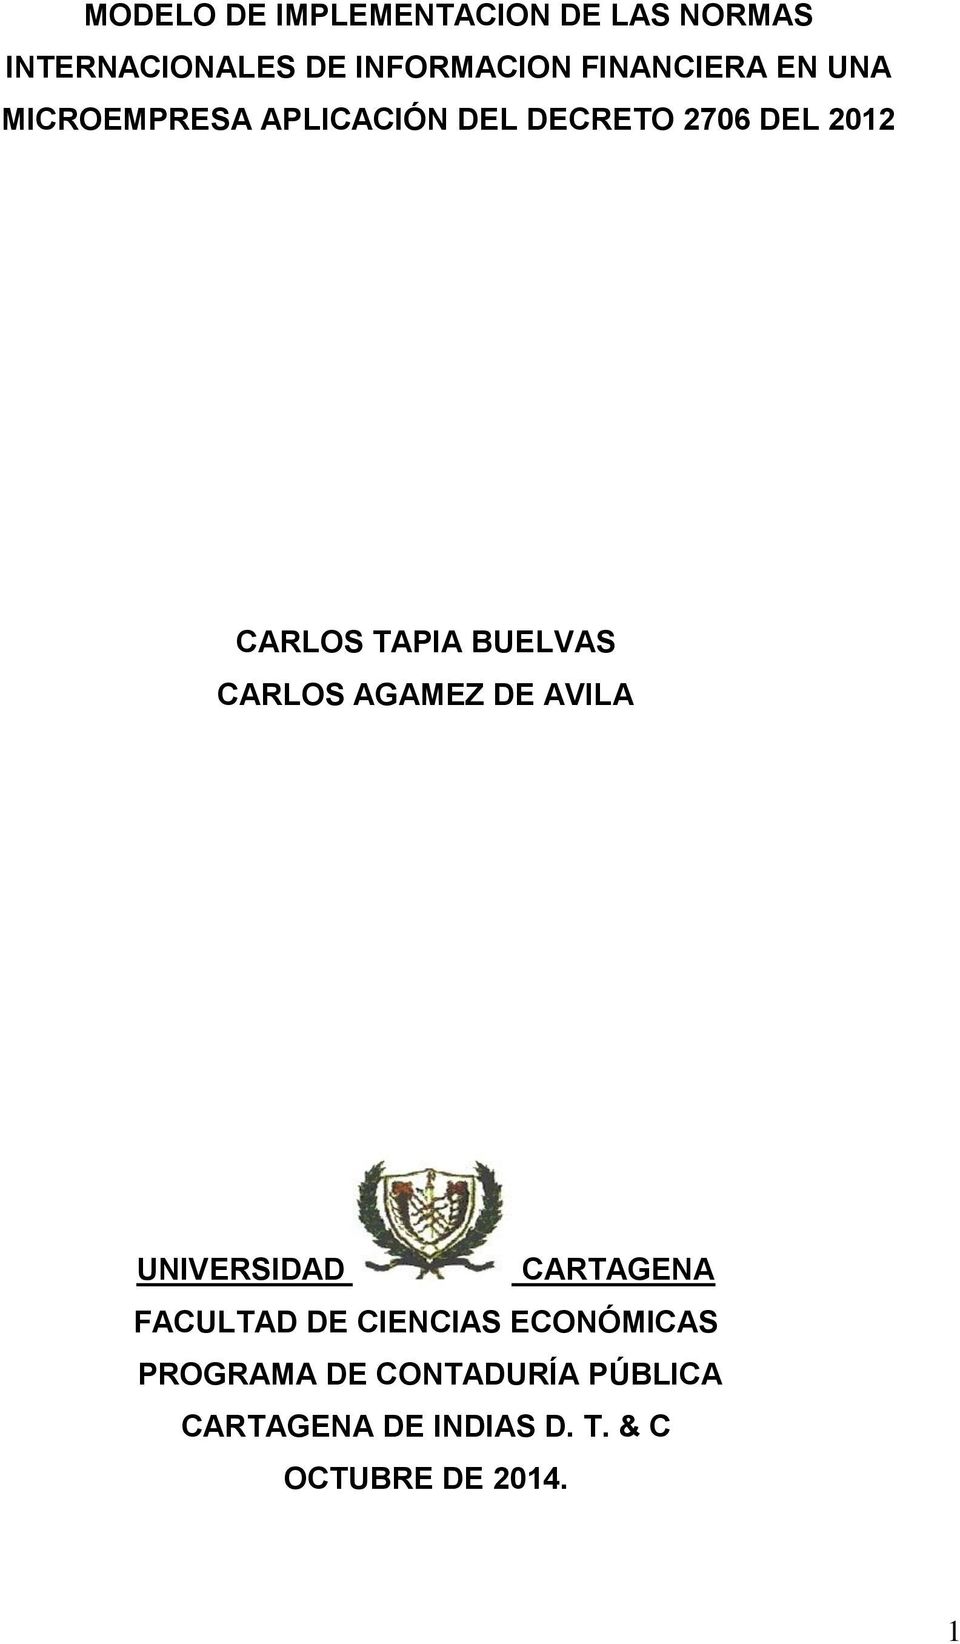 TAPIA BUELVAS CARLOS AGAMEZ DE AVILA UNIVERSIDAD CARTAGENA FACULTAD DE